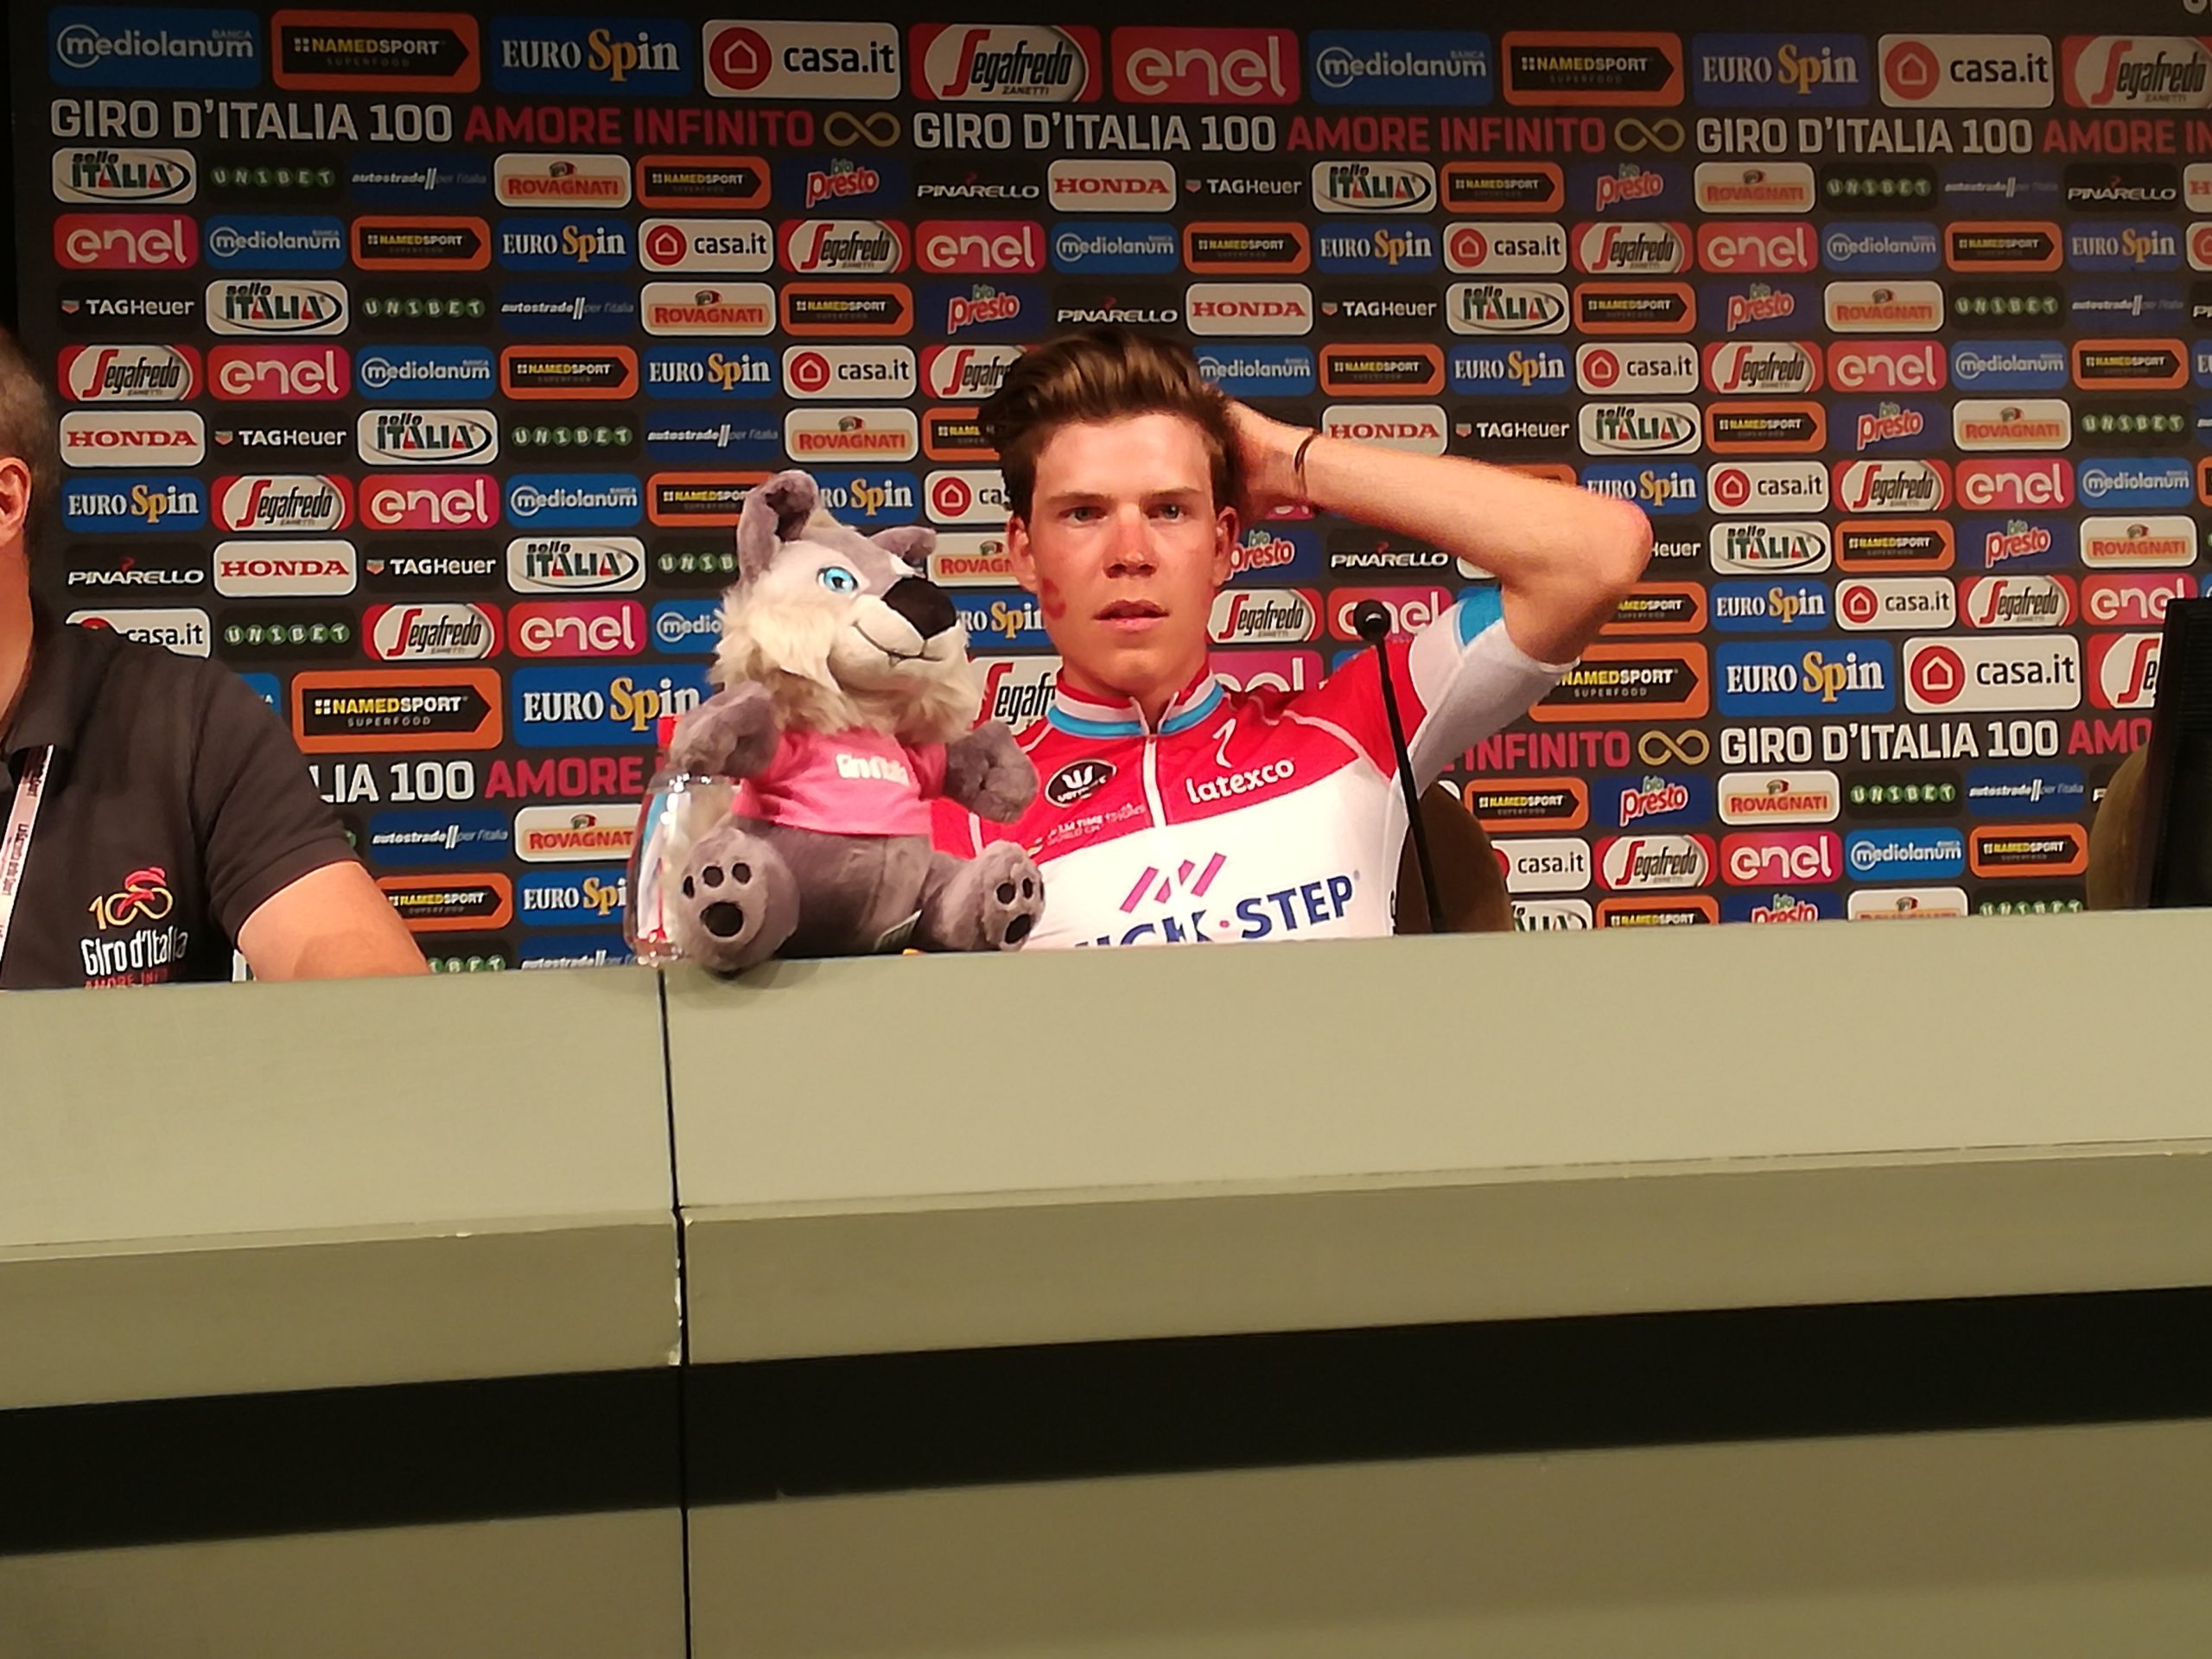 Jungels:”I tifosi del Giro sono fantastici”, ecco la sua dichiarazione d’amore per i tifosi italiani